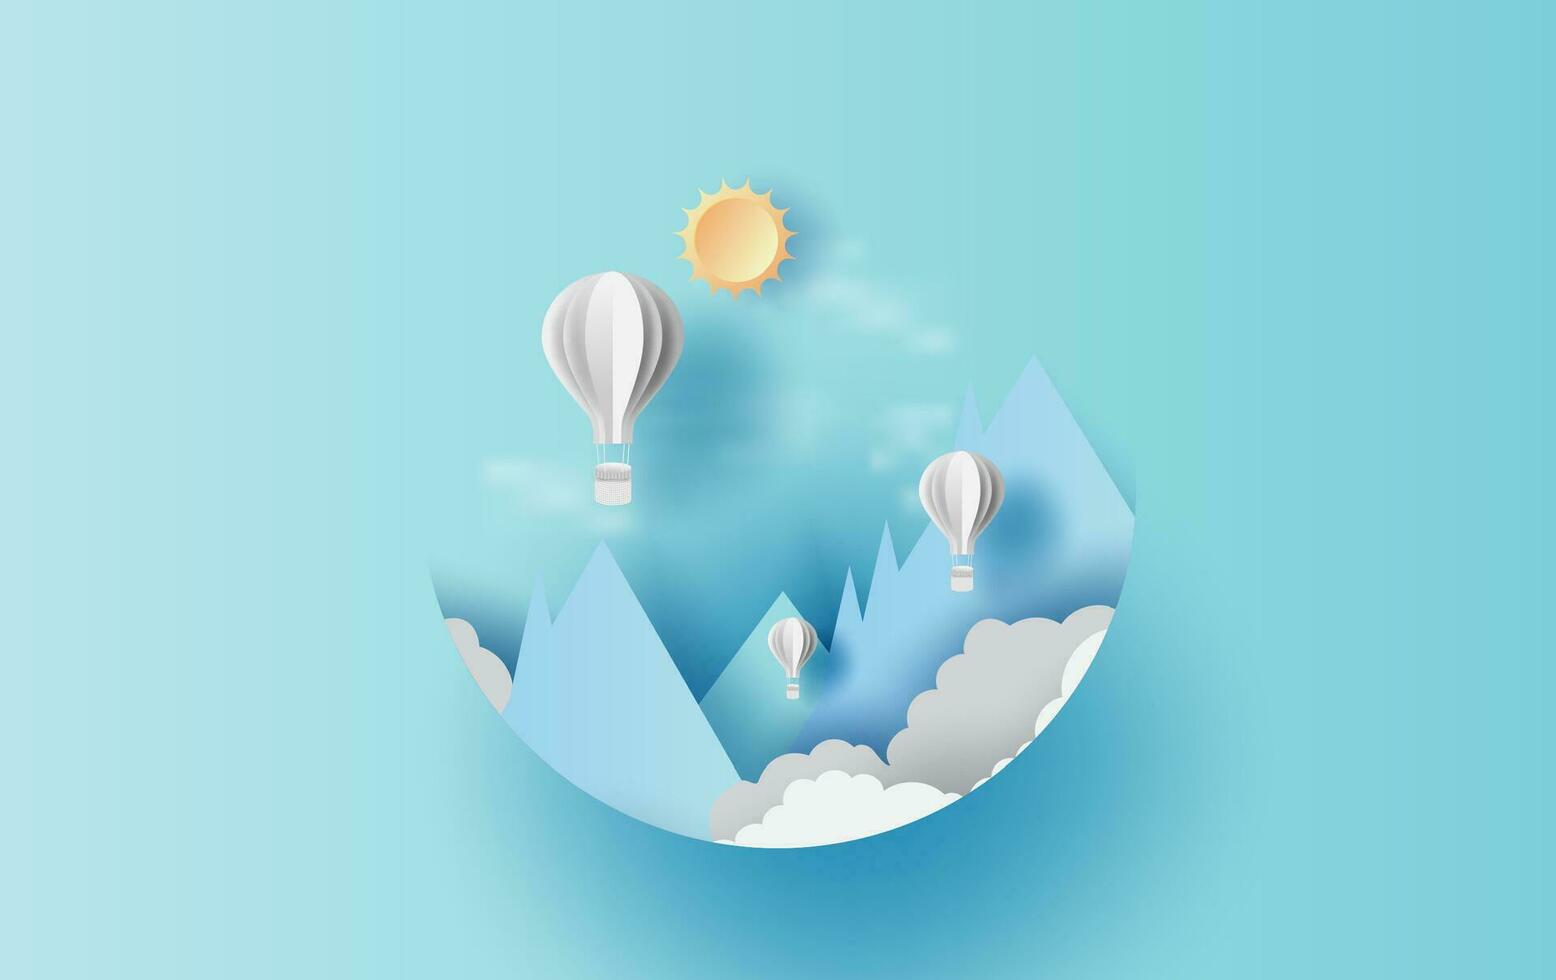 illustratie van cloudscape berg visie met heet lucht wit ballonnen vlotter omhoog in de blauw lucht zonlicht .grafisch ontwerp papier besnoeiing stijl.vakantie zomertijd idee pastel kleur achtergrond voor kaart.vector vector